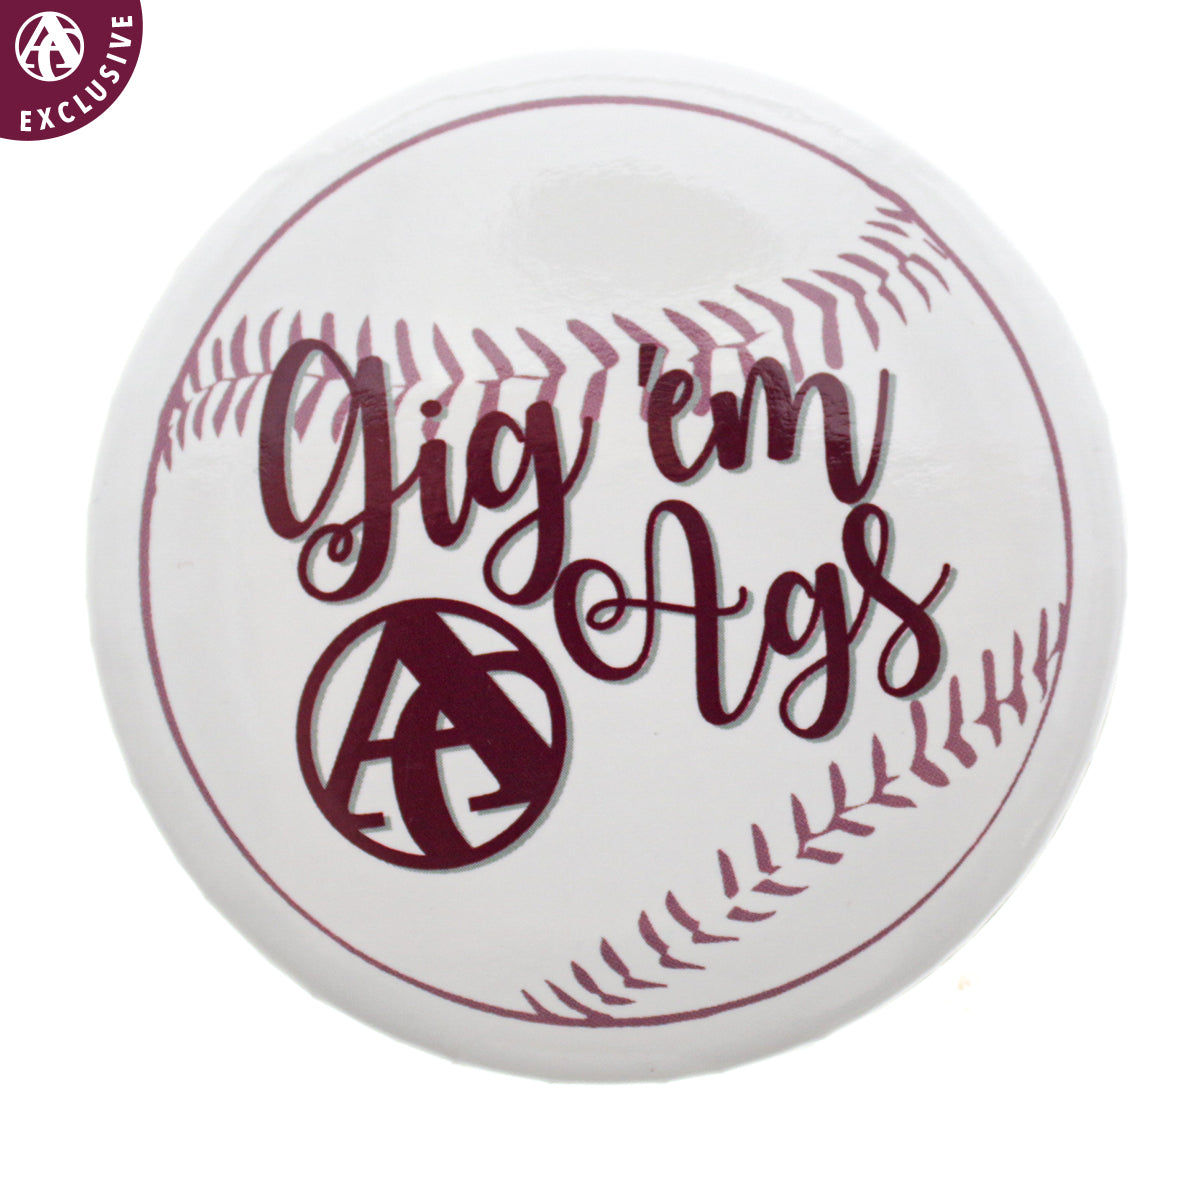 Gig 'Em Ags Baseball Button